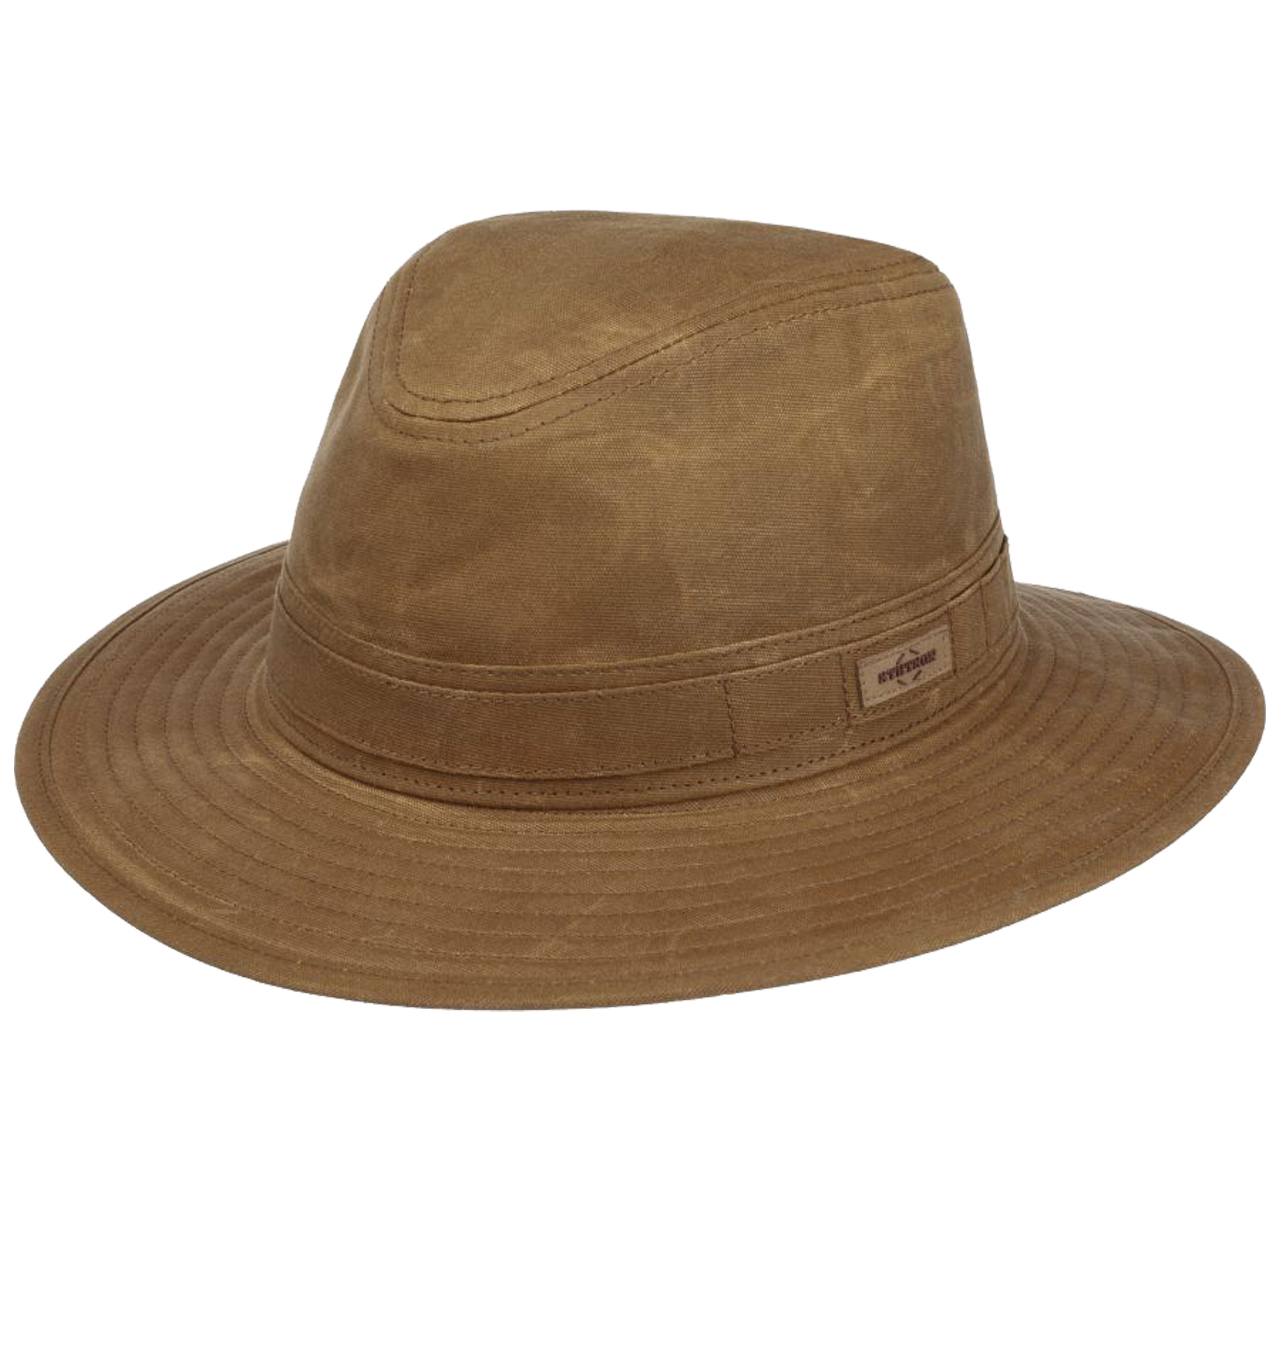 Stetson - Vintage Wax Traveller Cotton Hat - Brown